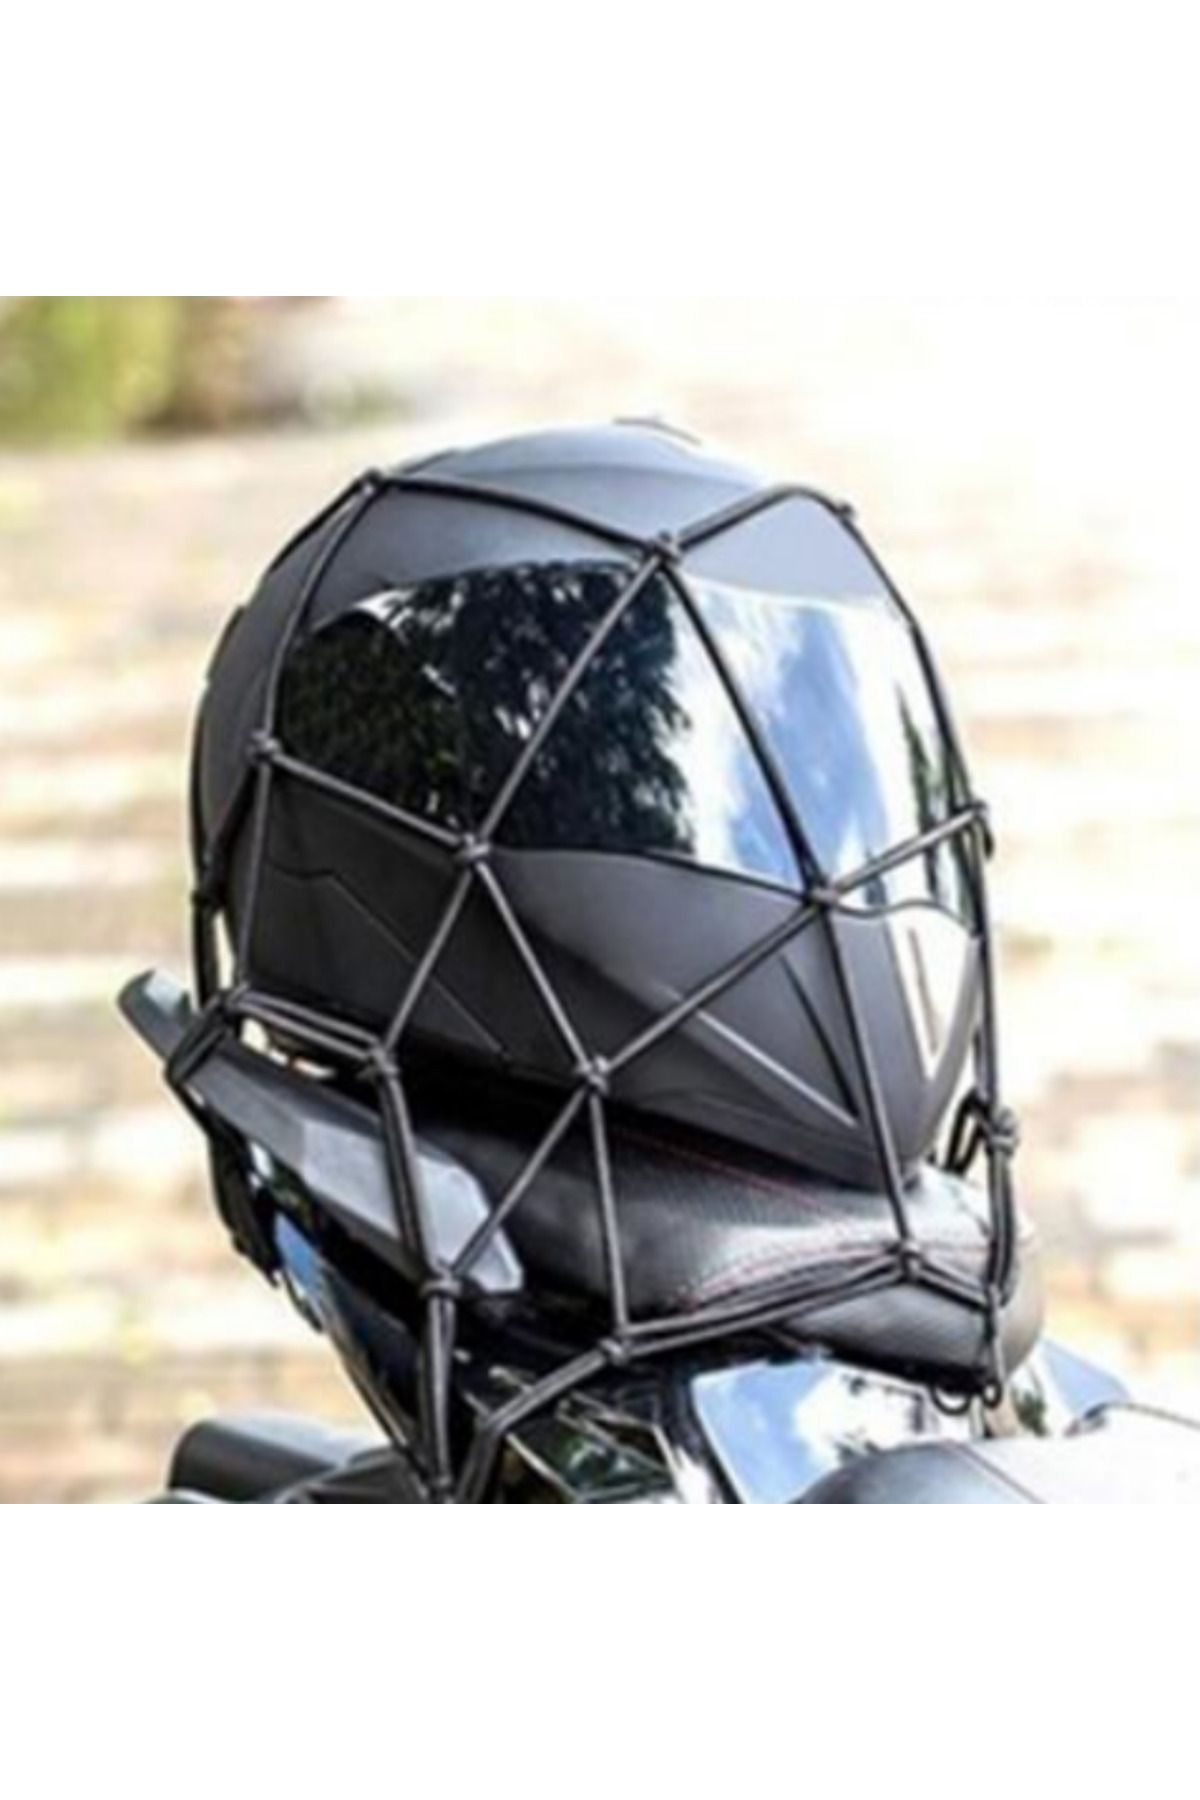 Motois Motosiklet Bagaj Filesi Ahtapot 16 Gözlü Motor Kask Bağlama Eşya Taşıma Filesi siyah